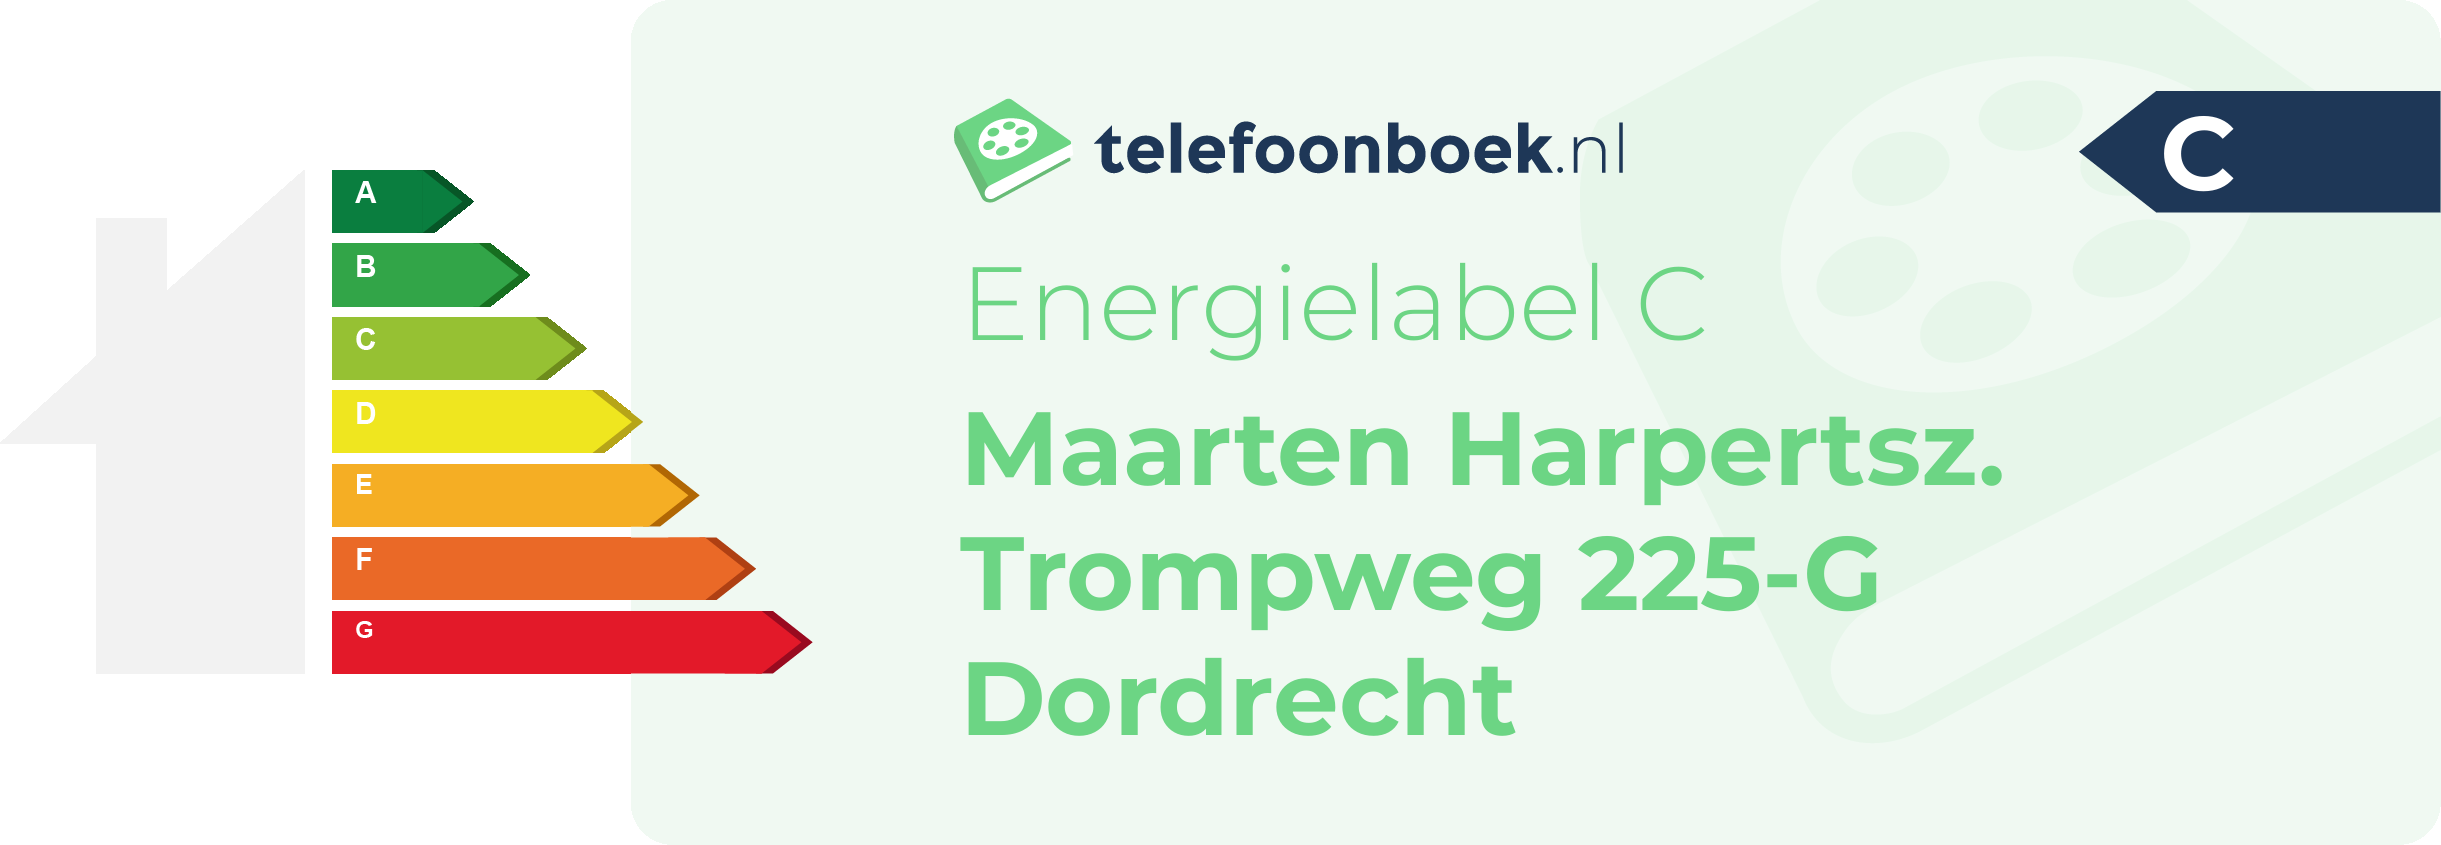 Energielabel Maarten Harpertsz. Trompweg 225-G Dordrecht